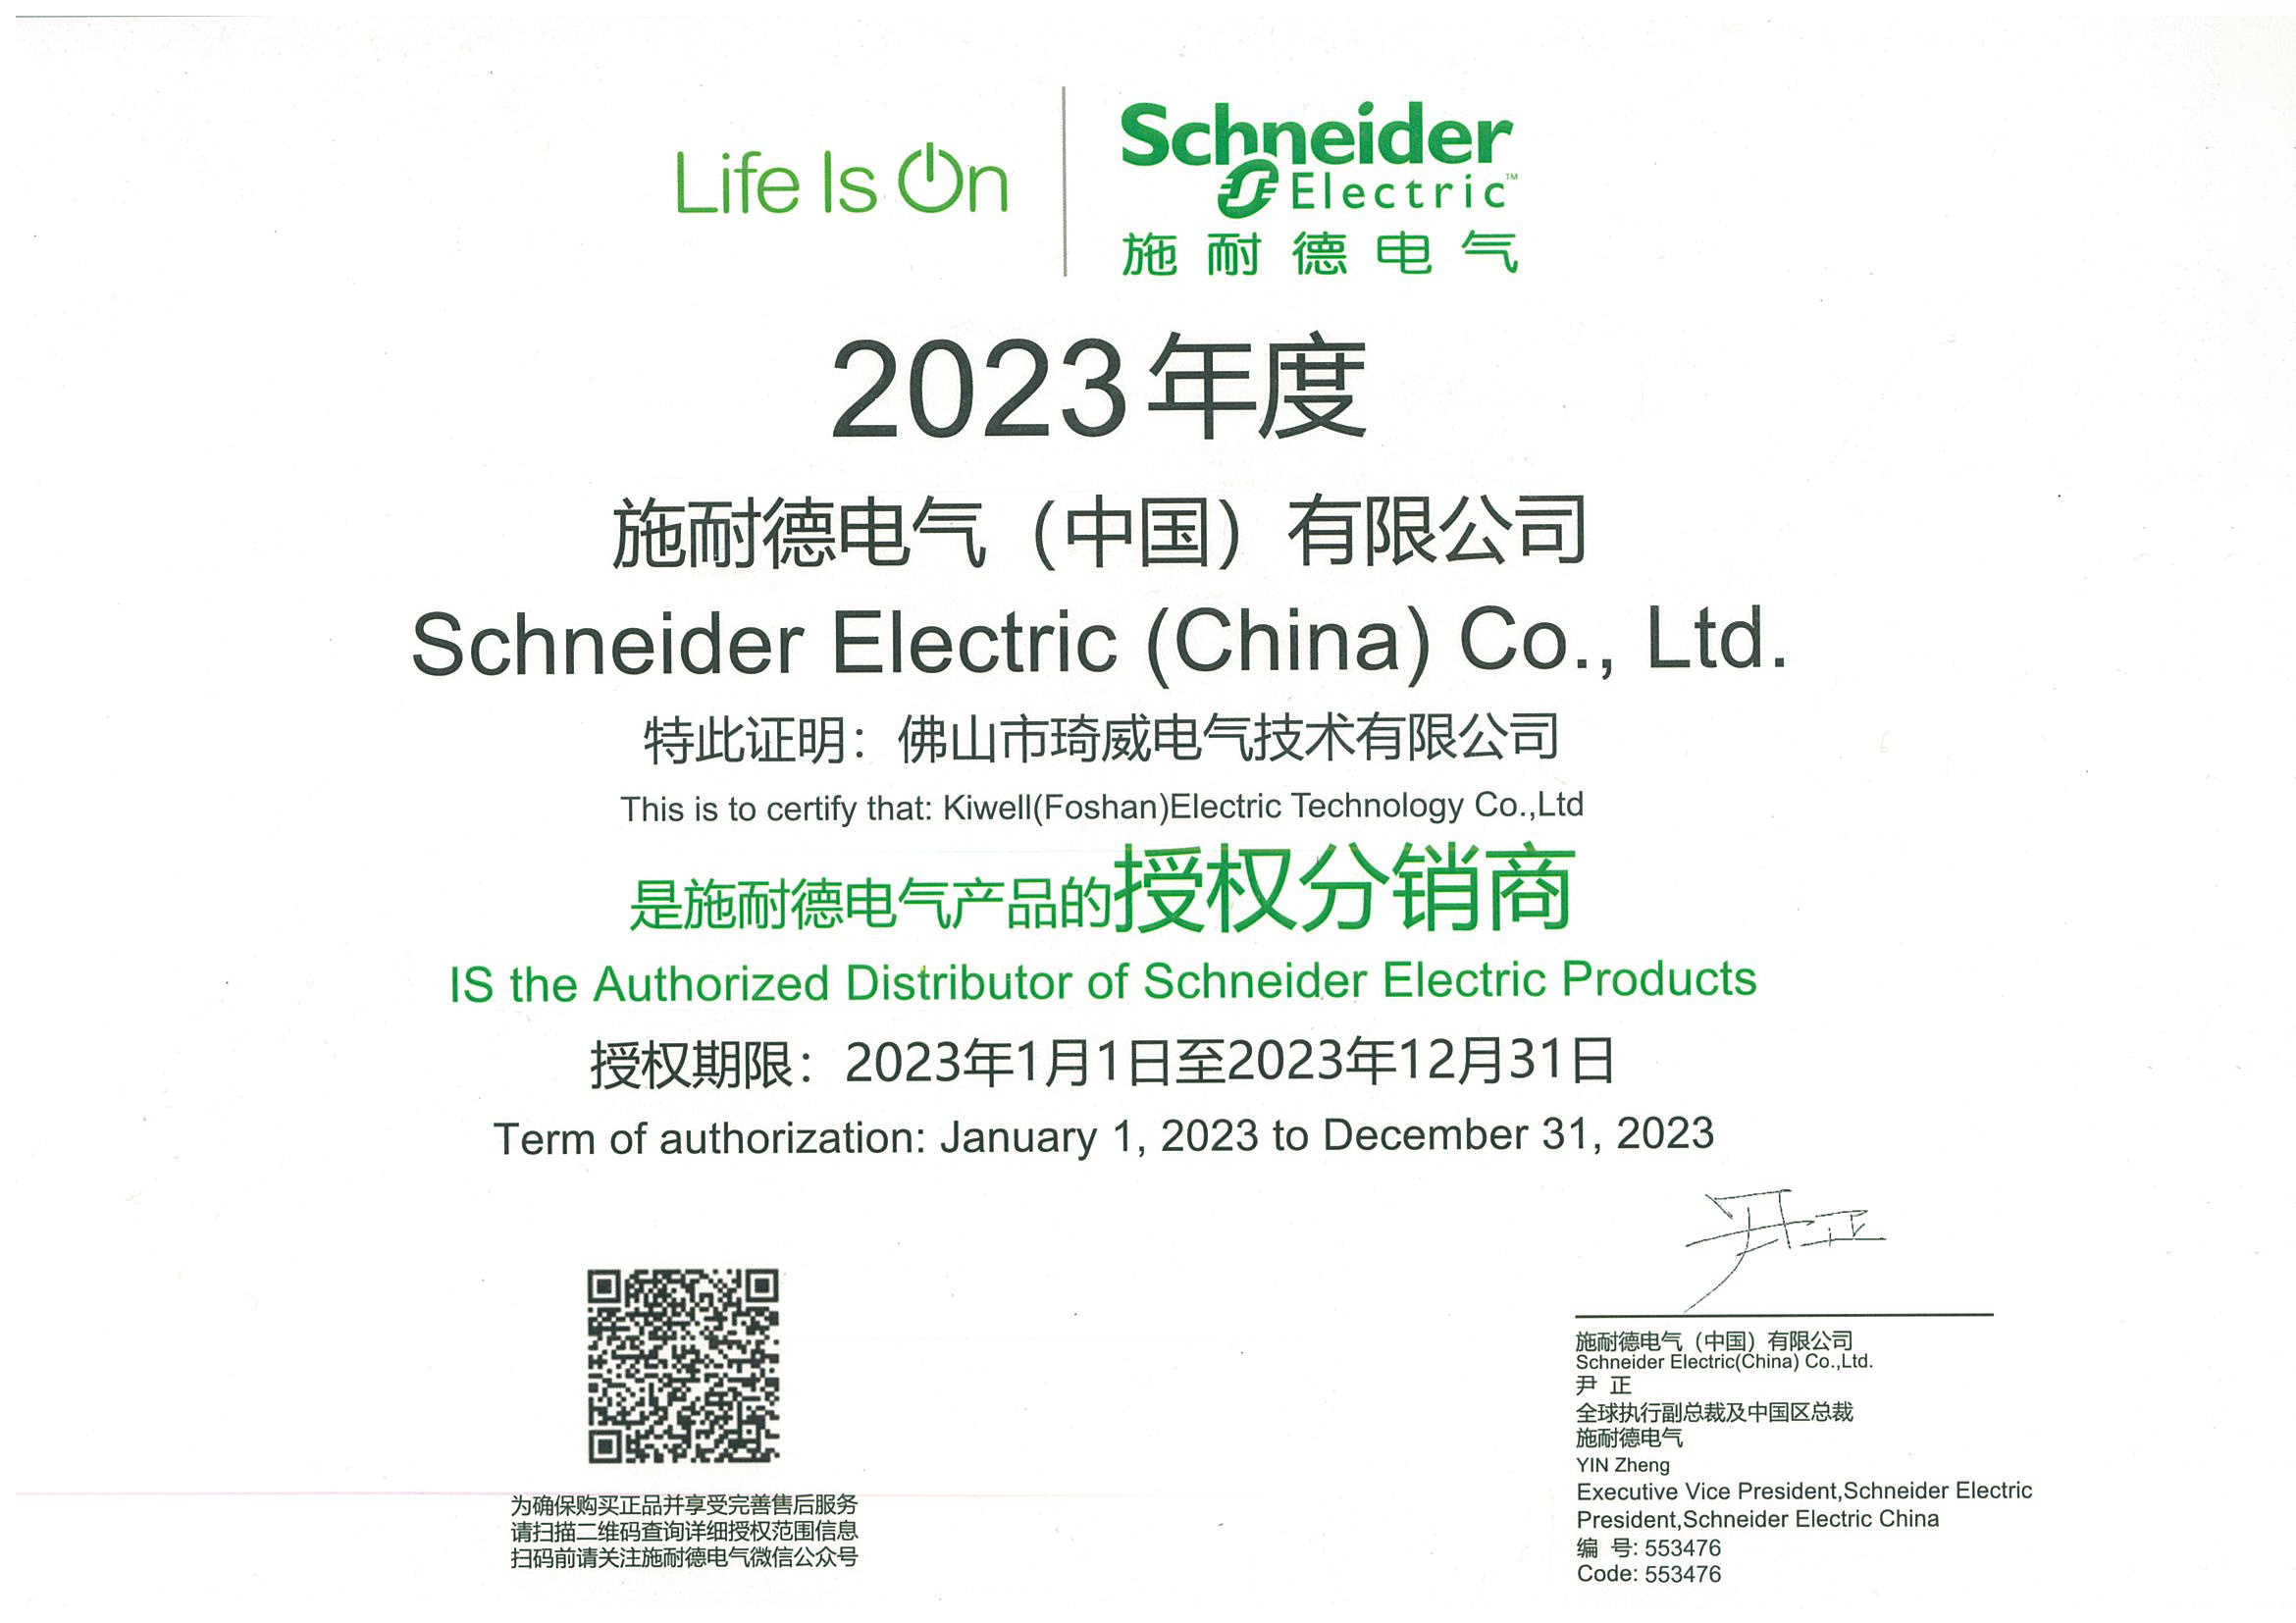 Schneider Agency Certificate 2023